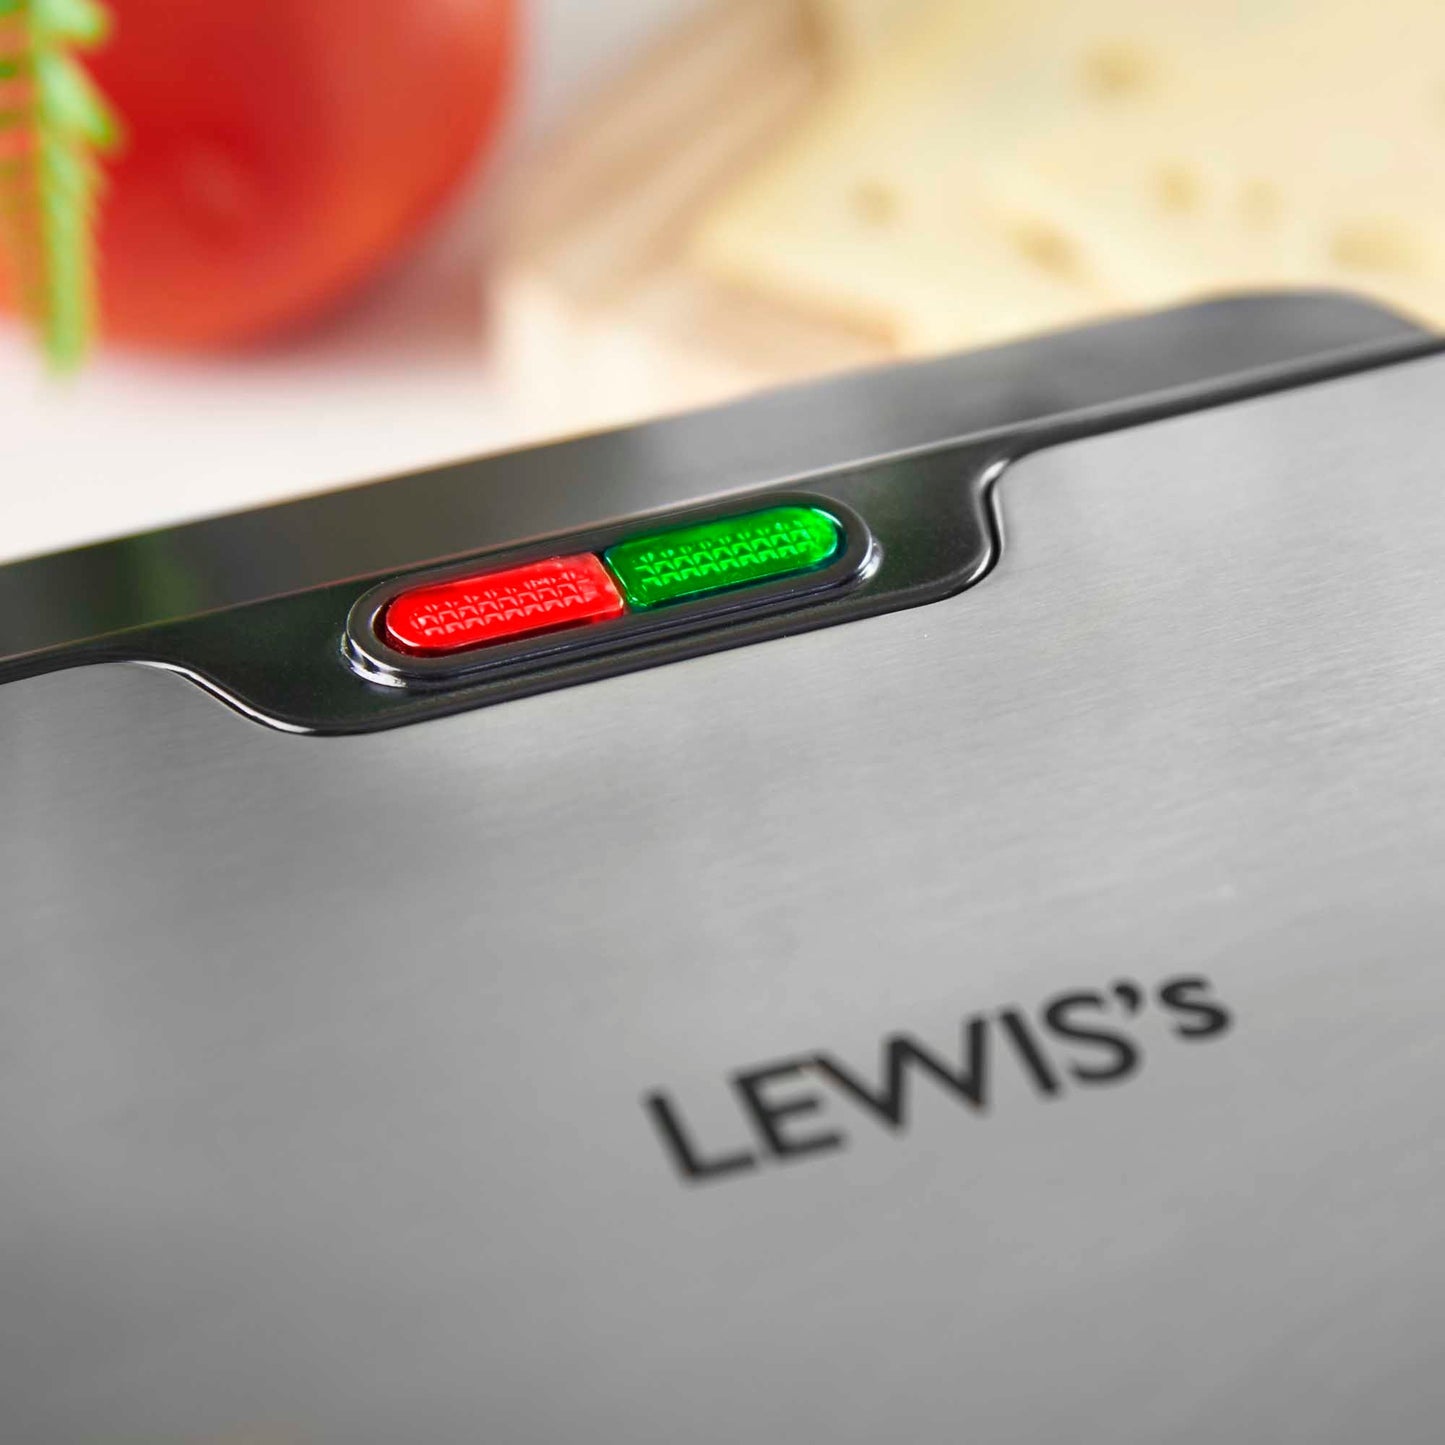 Lewis's Deep Fill Sandwich Maker